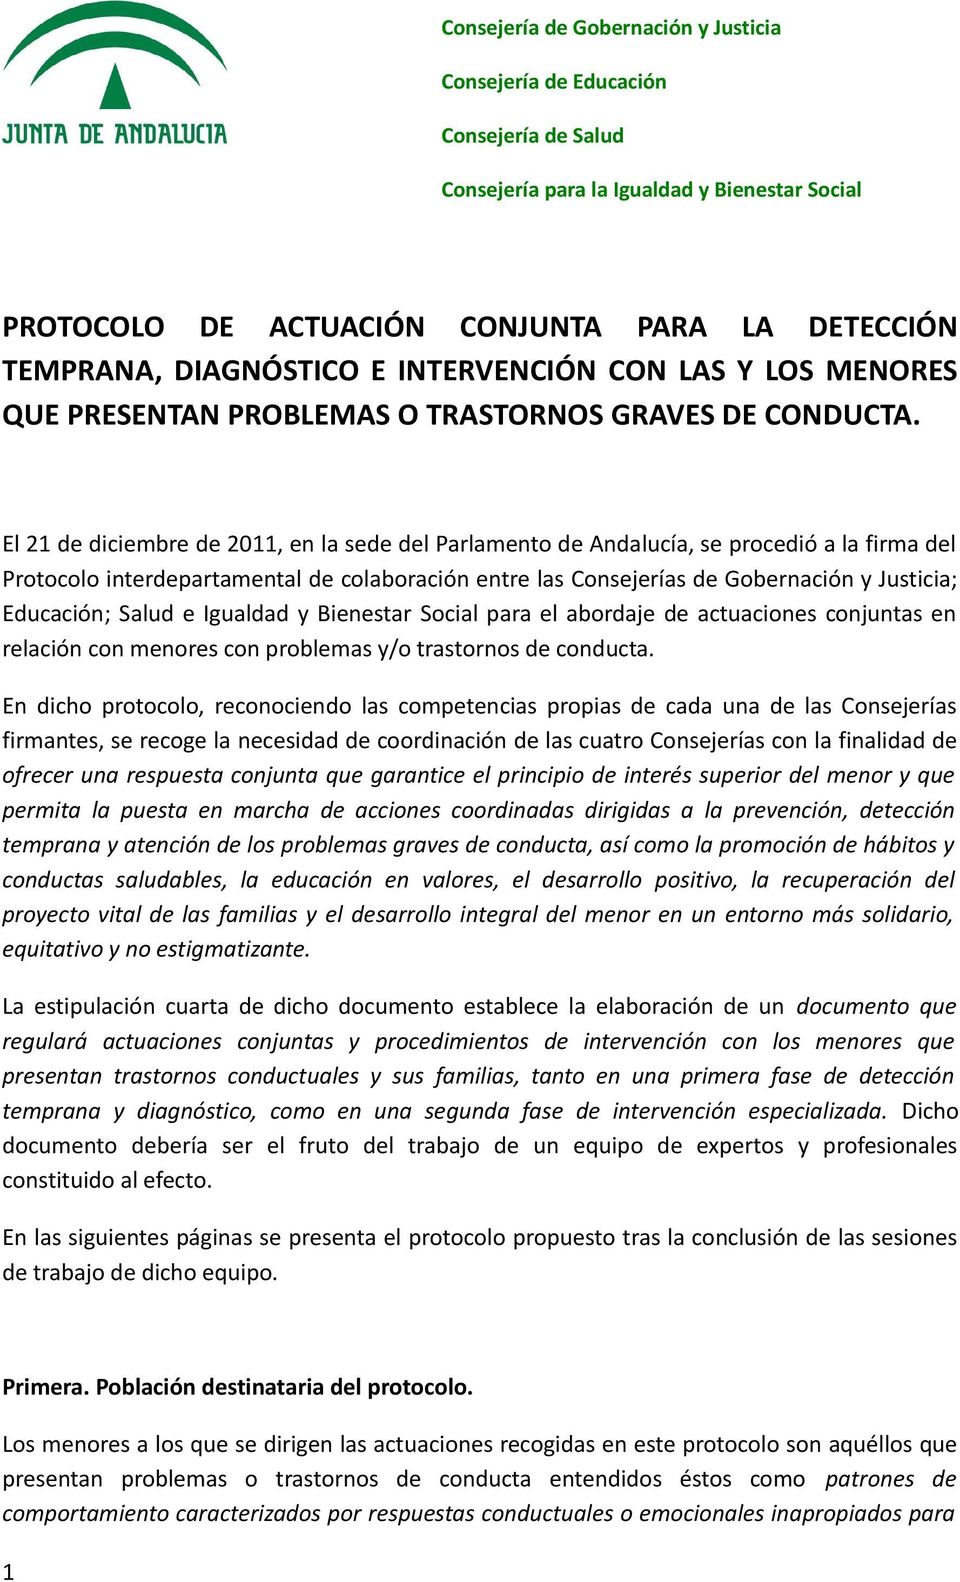 El 21 de diciembre de 2011, en la sede del Parlamento de Andalucía, se procedió a la firma del Protocolo interdepartamental de colaboración entre las Consejerías de Gobernación y Justicia; Educación;